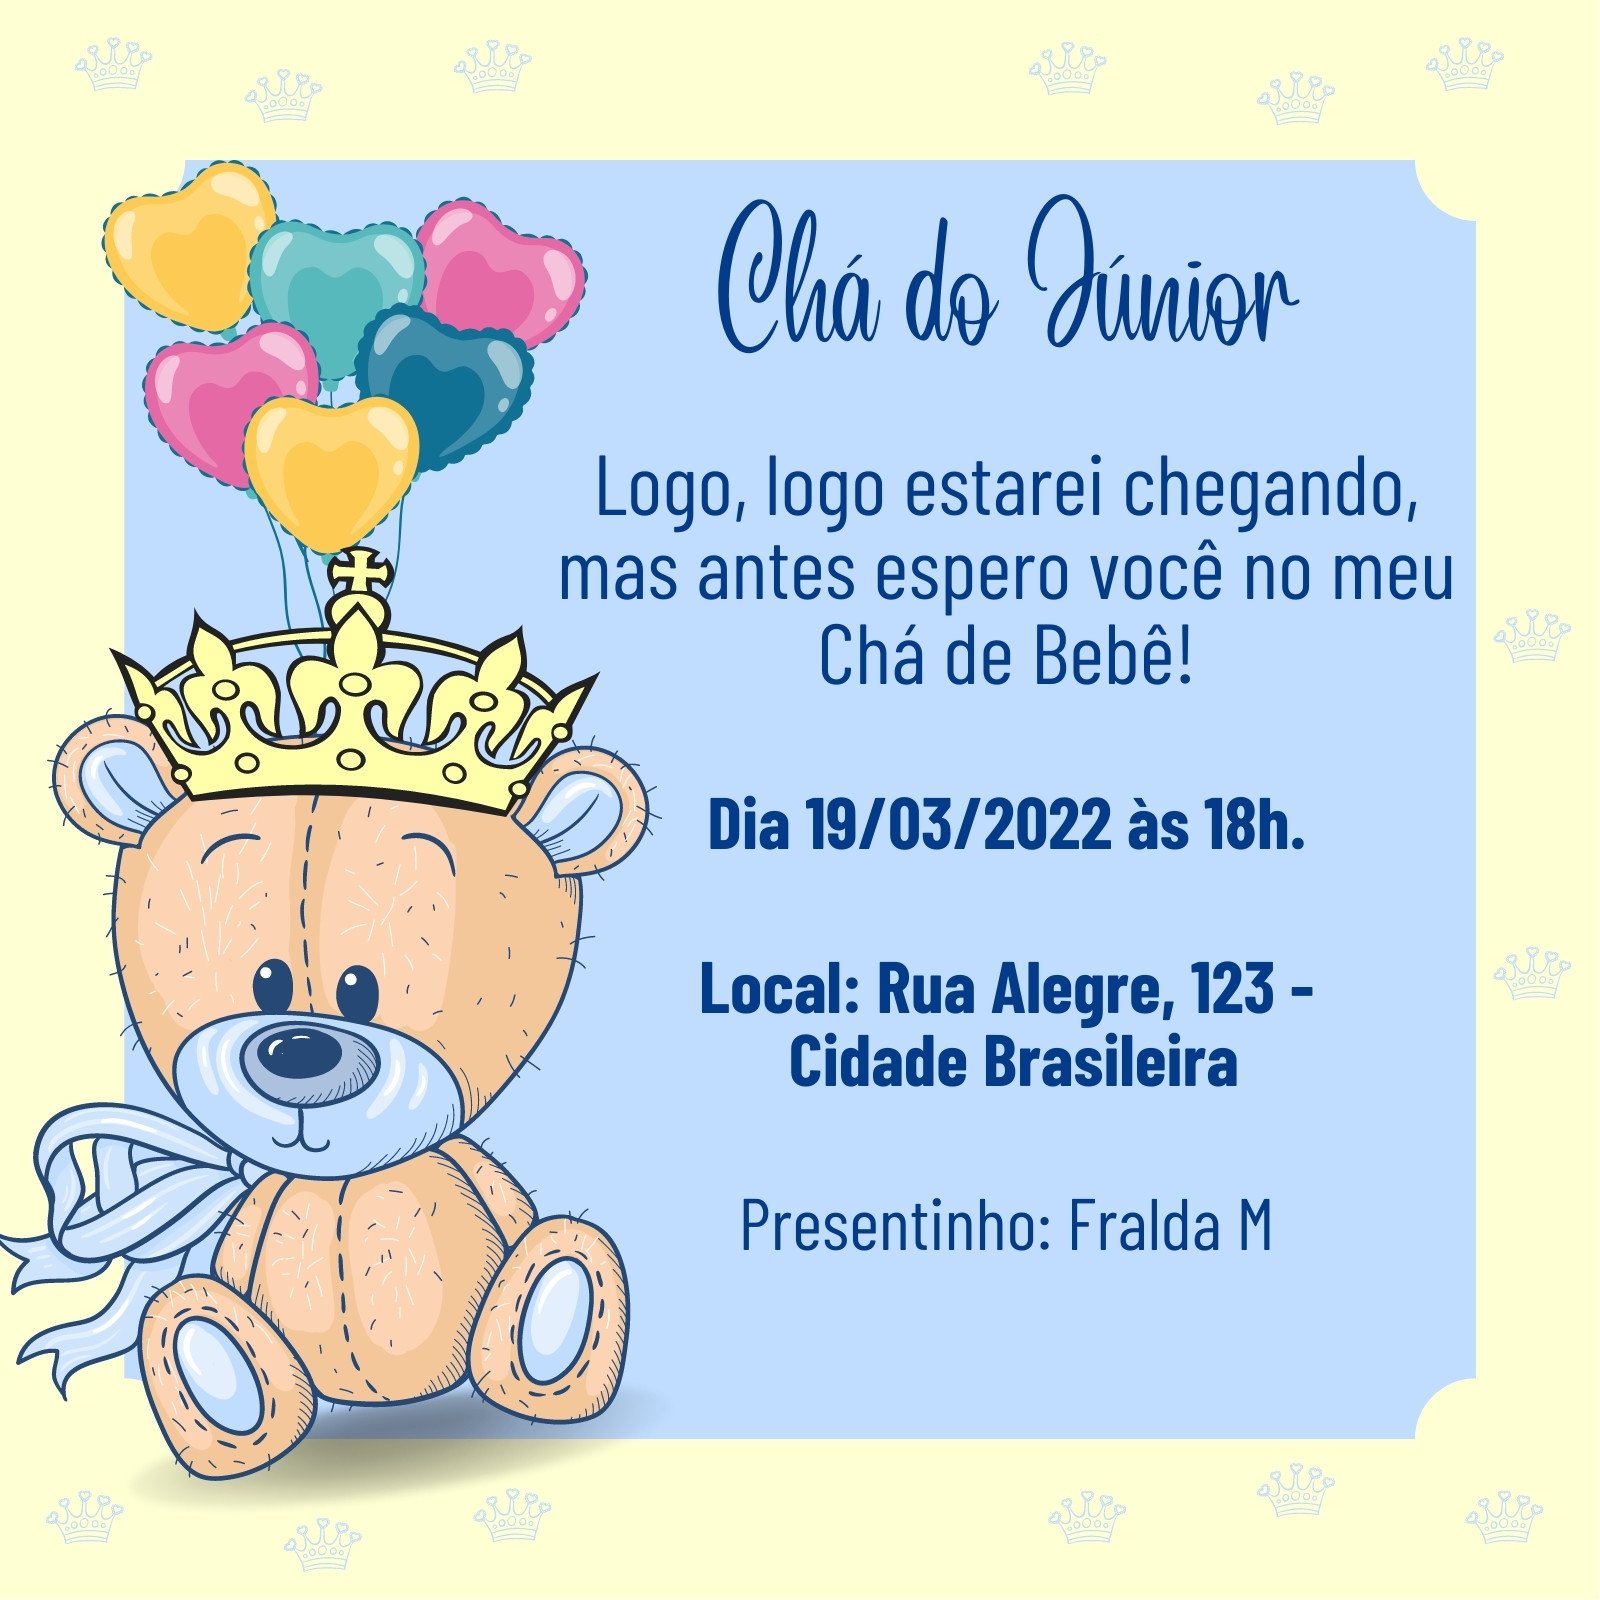 Grátis - Fazer convite online convite digital Chá de bebê Menina Ursinha  Realeza com dica mimo +